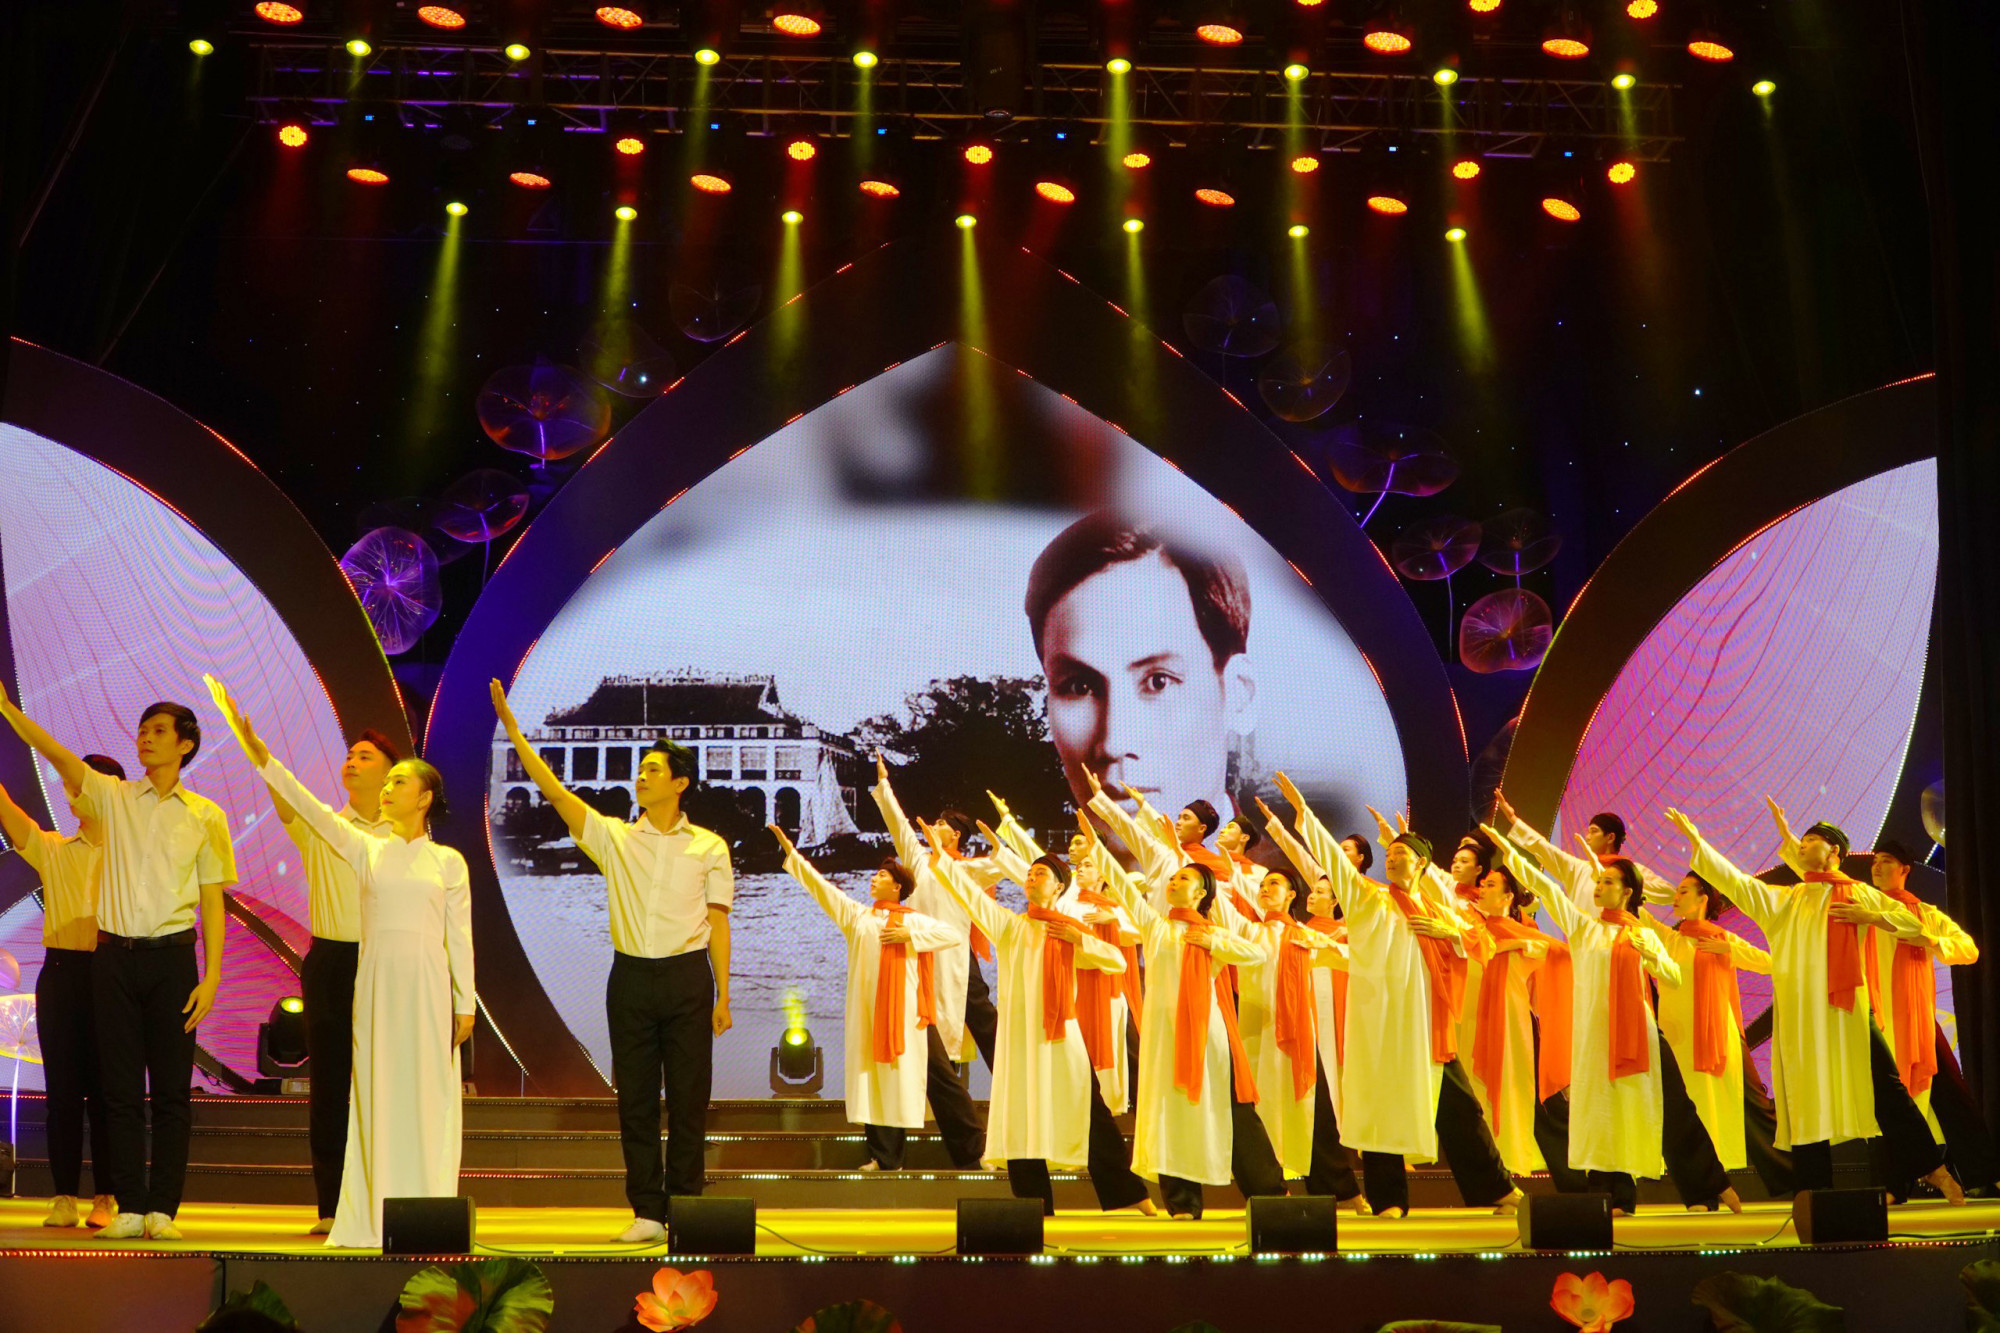 Chương trình nghệ thuật 'Vang mãi bài ca Hồ Chí Minh' được dàn dựng công phu ( gồm 3 phần: Bài ca chân lý, Dâng Người ngàn hoa chiến công, Thành phố Hồ Chí Minh– Văn minh, hiện đại, nghĩa tình trình diễn những tác phẩm âm nhạc truyền thống hào hùng) 